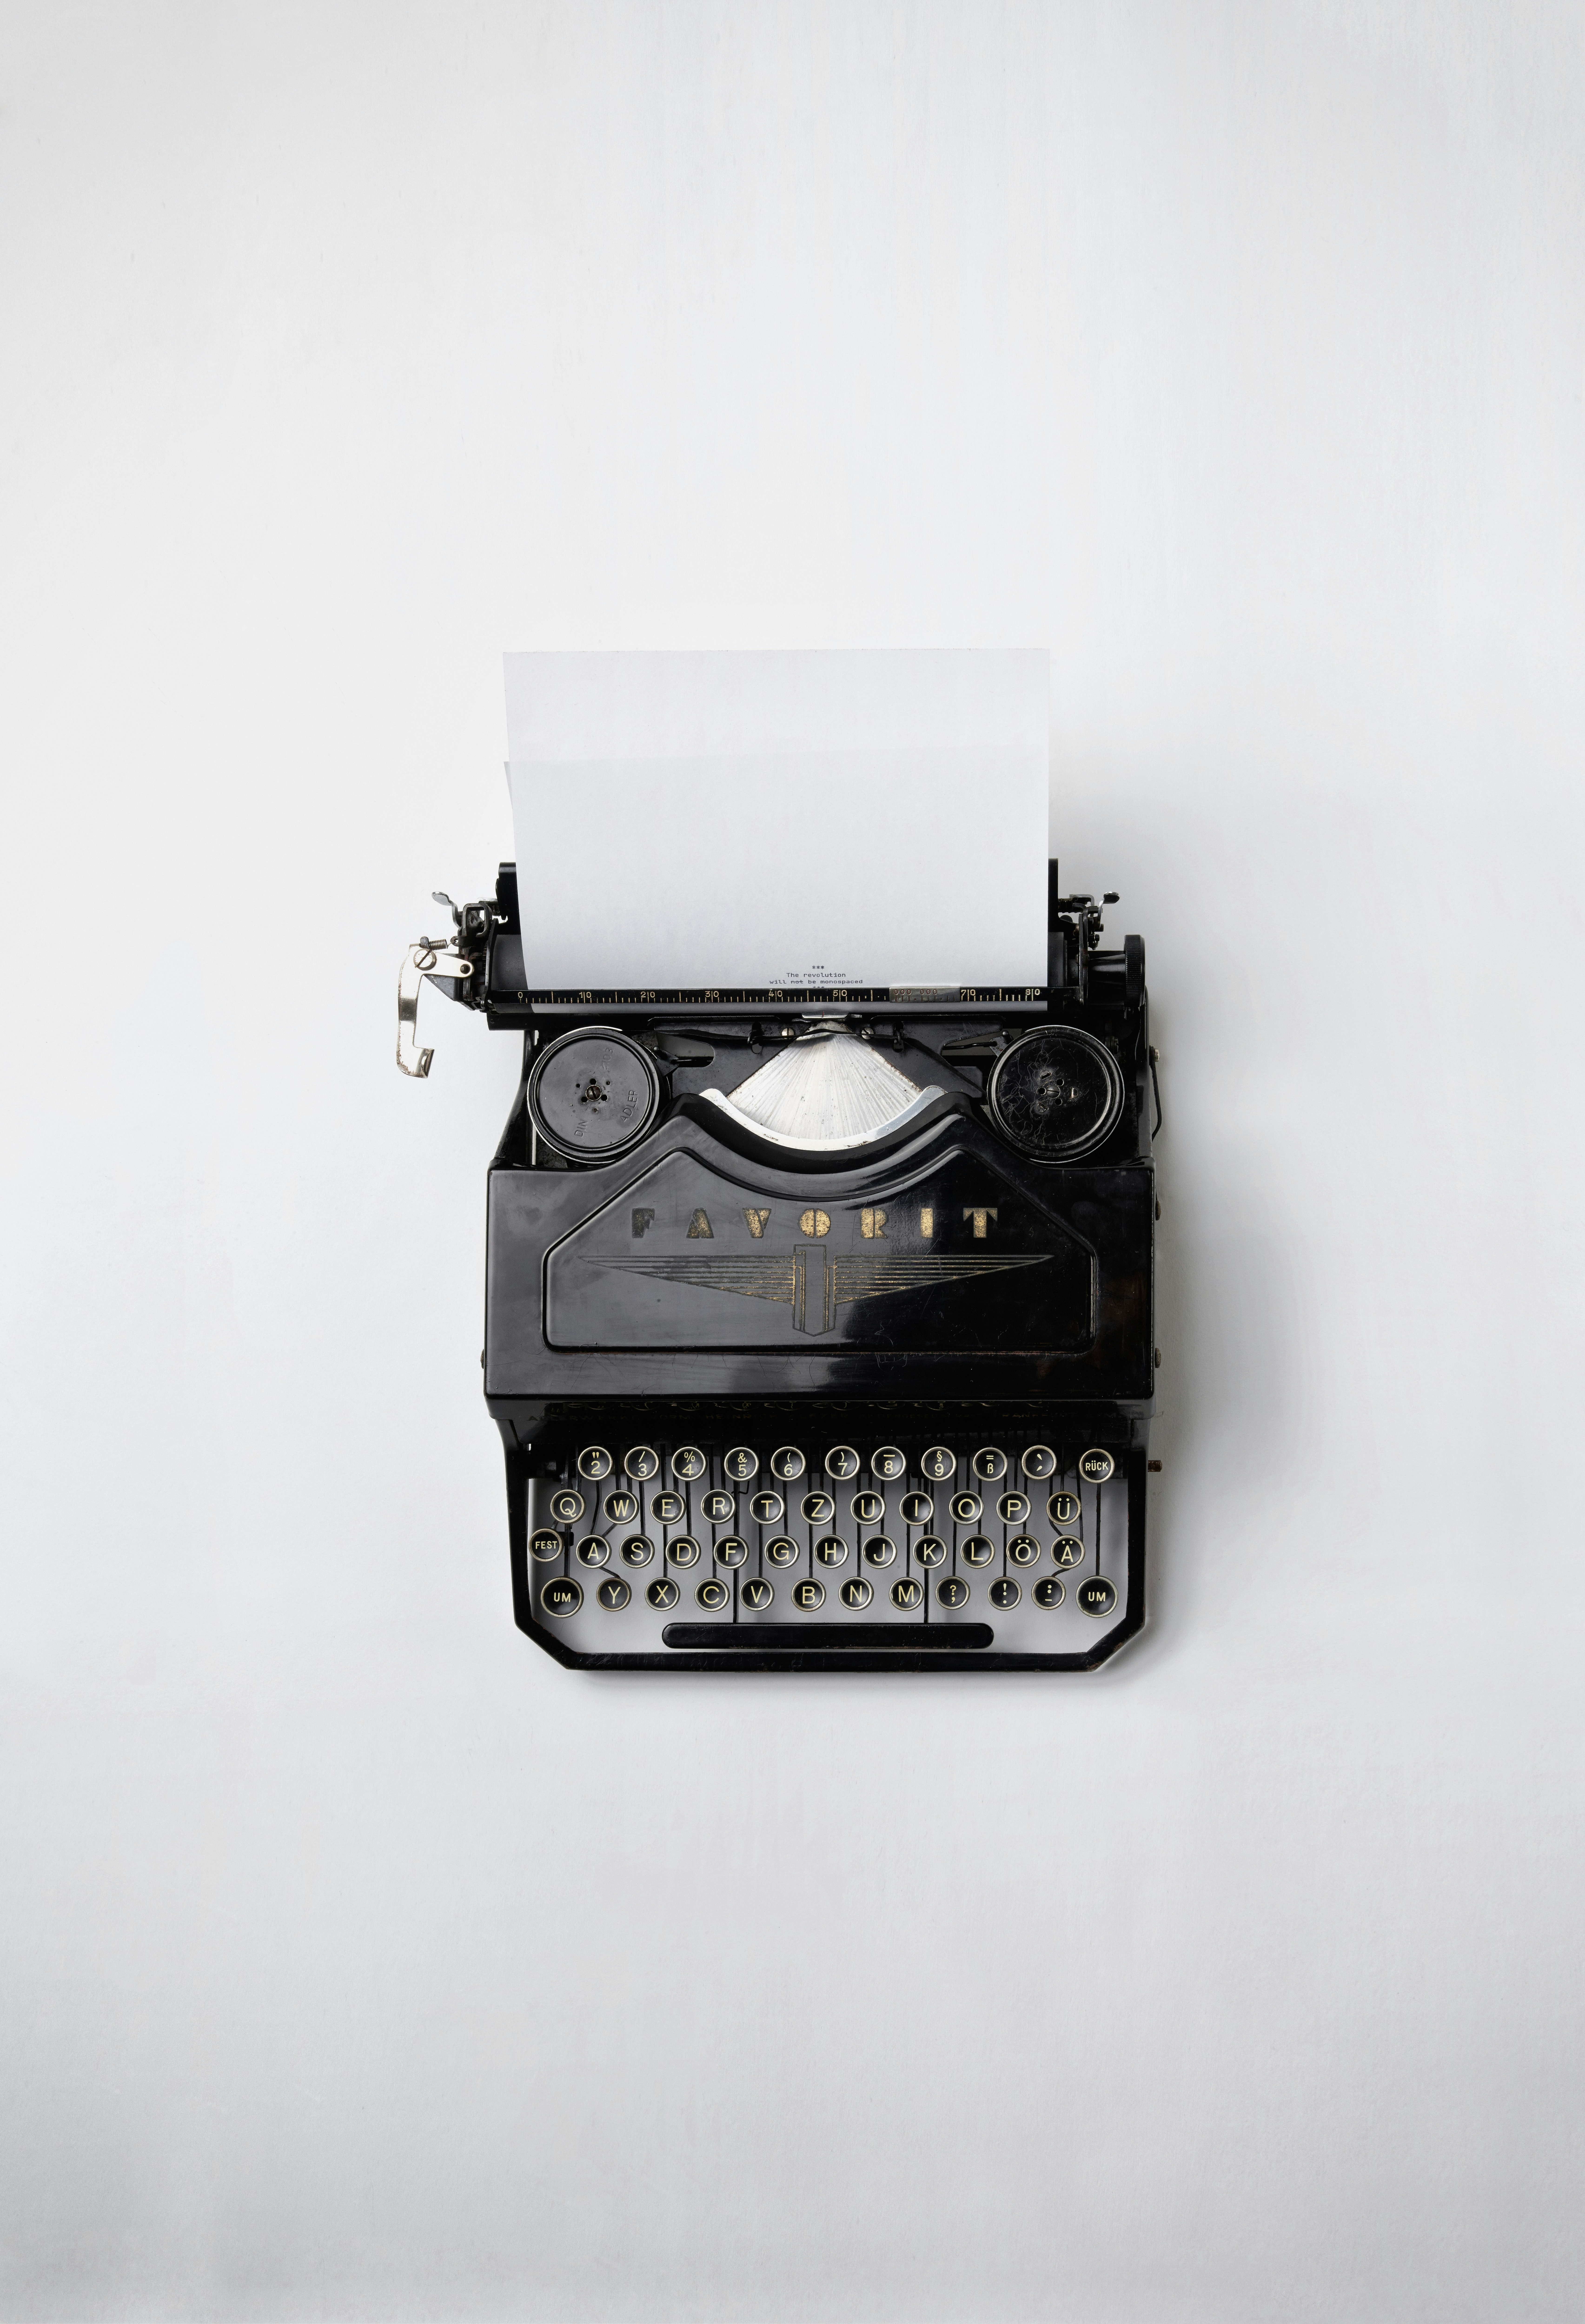 image of a typewriter.